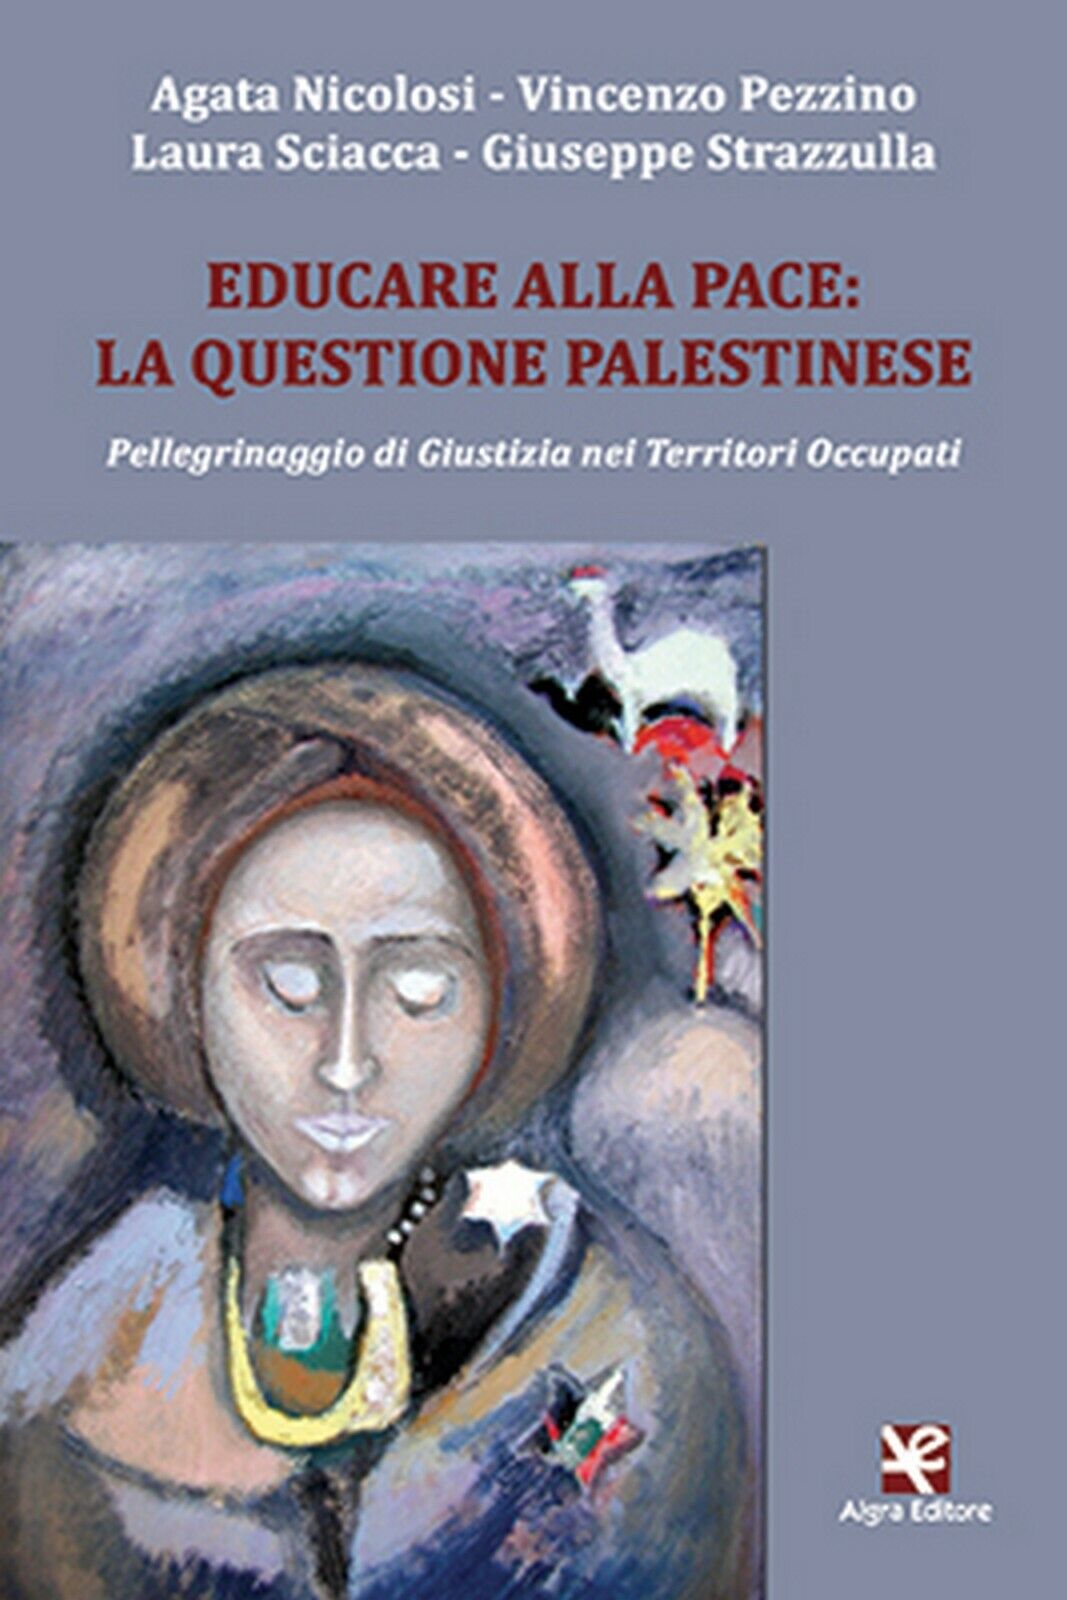 Educare alla pace: la questione palestinese  di Agata Nicolosi,  Algra Editore